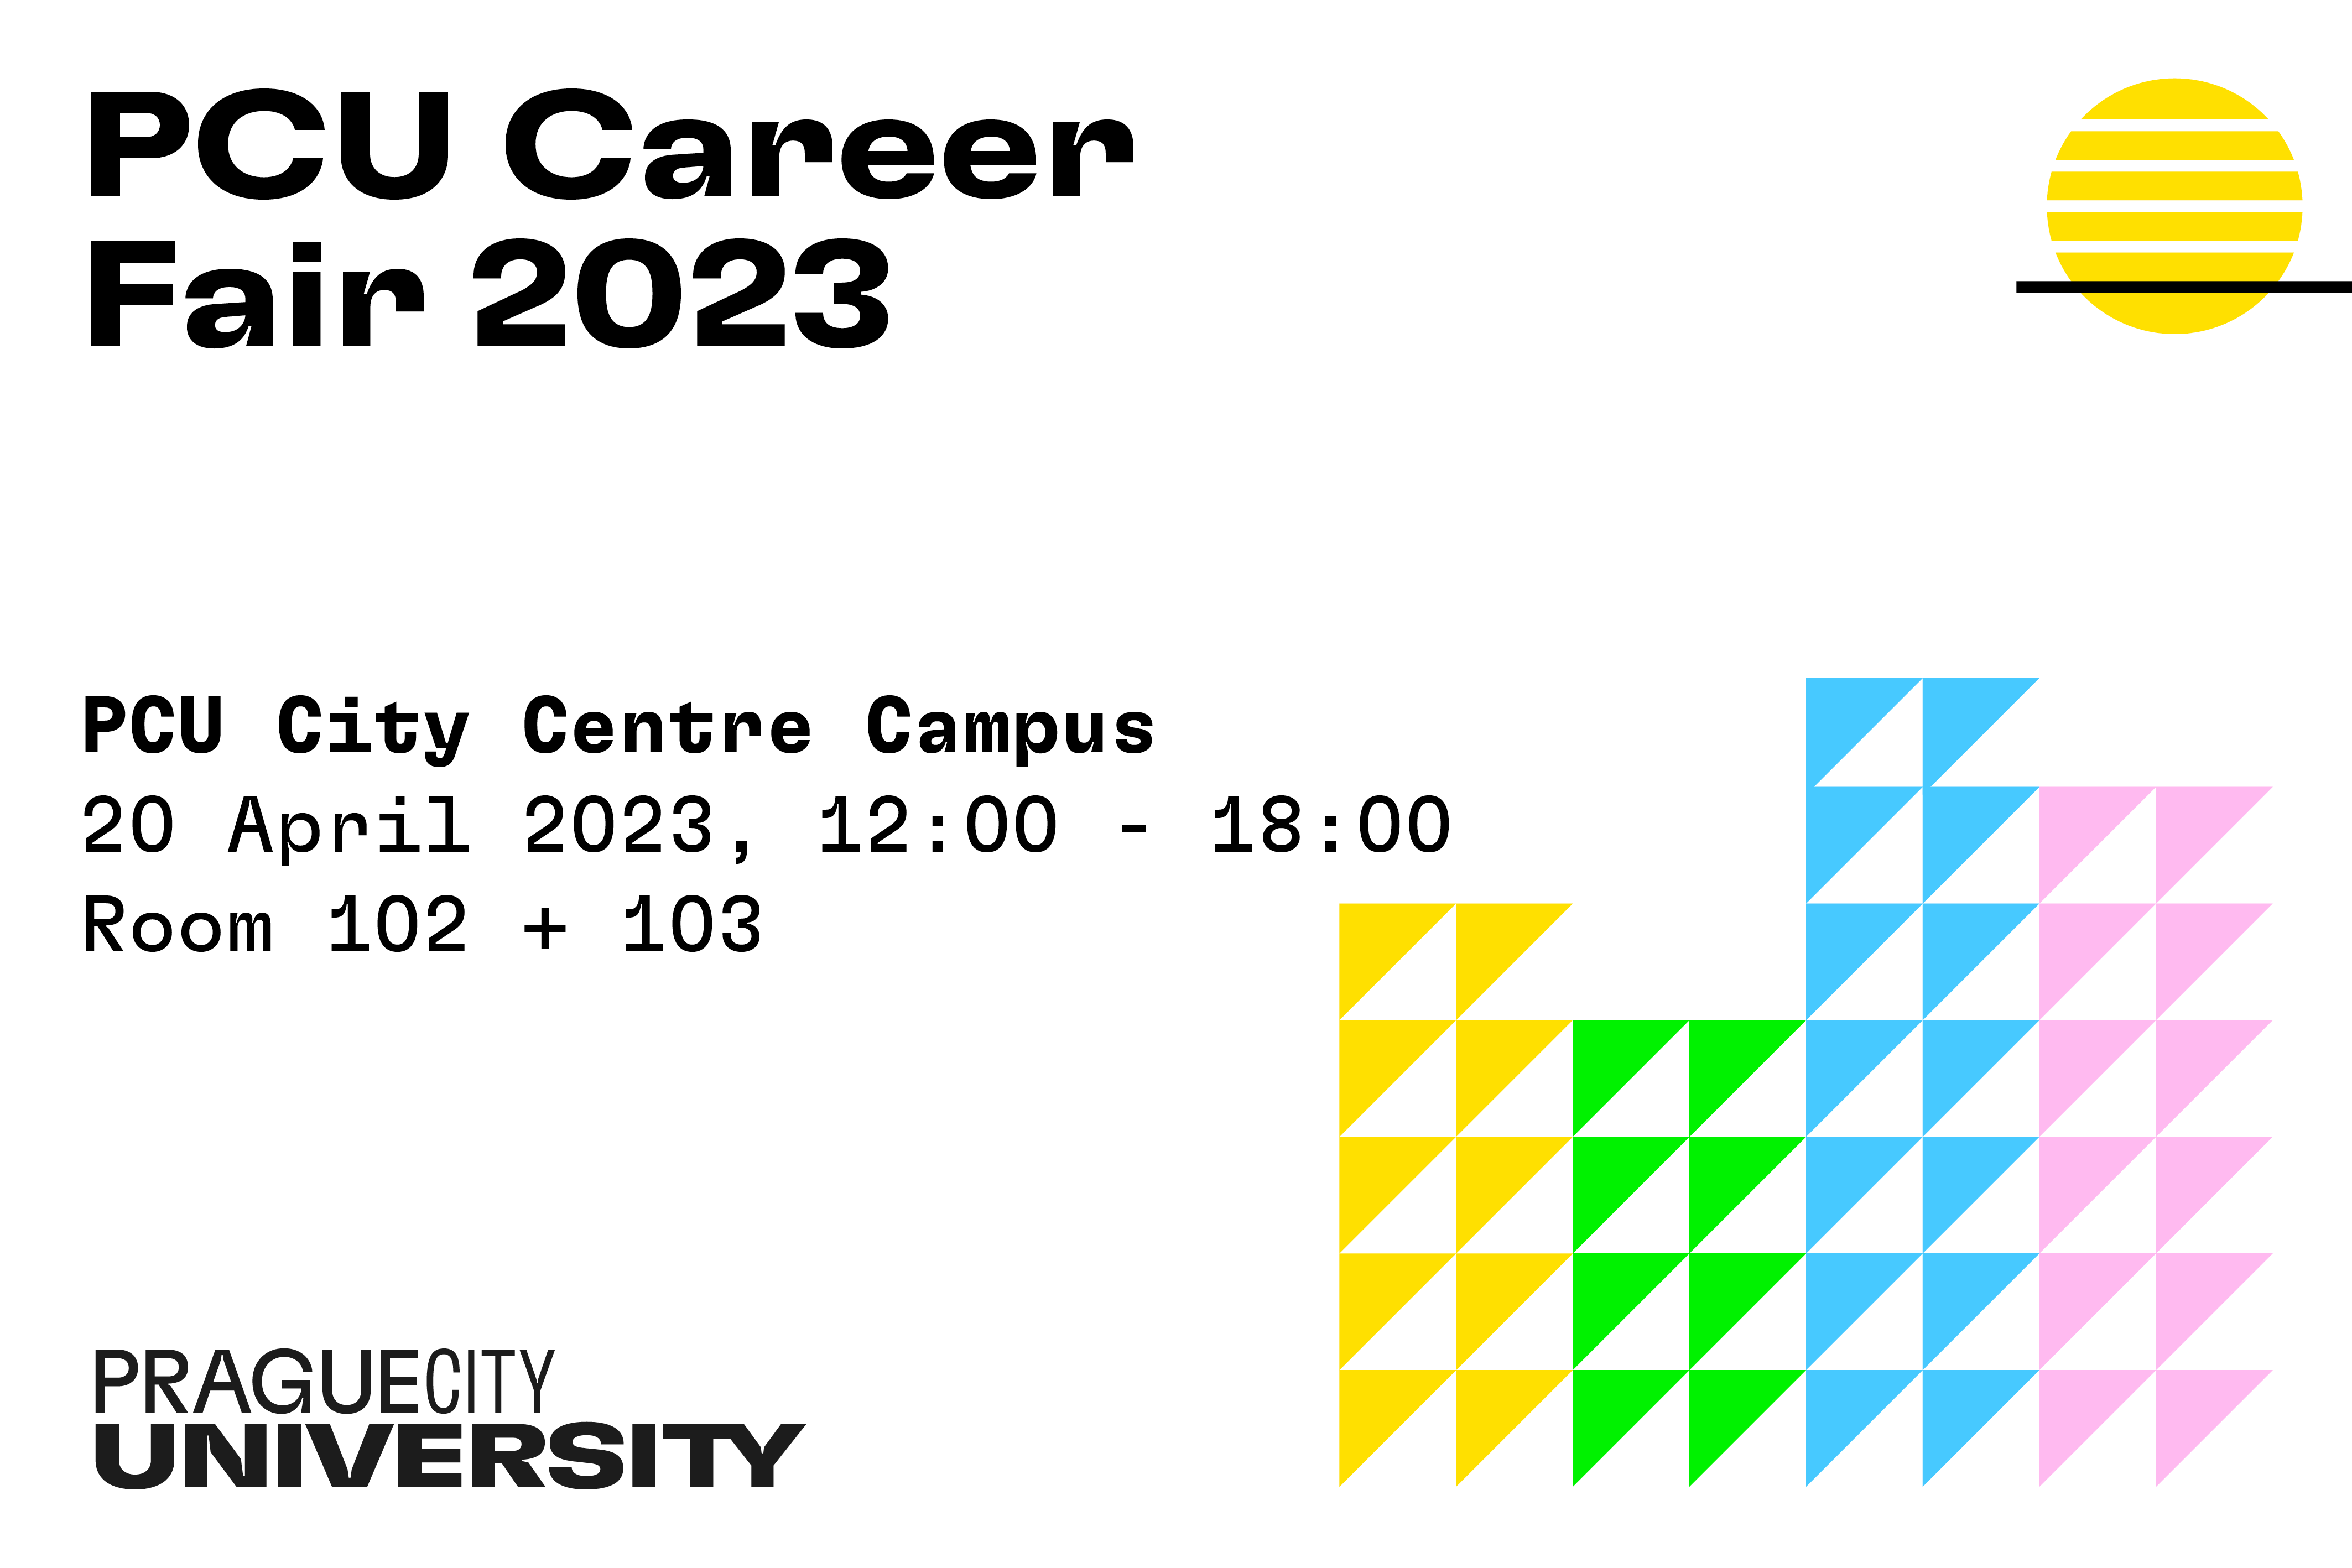 PCU Career Fair 2023